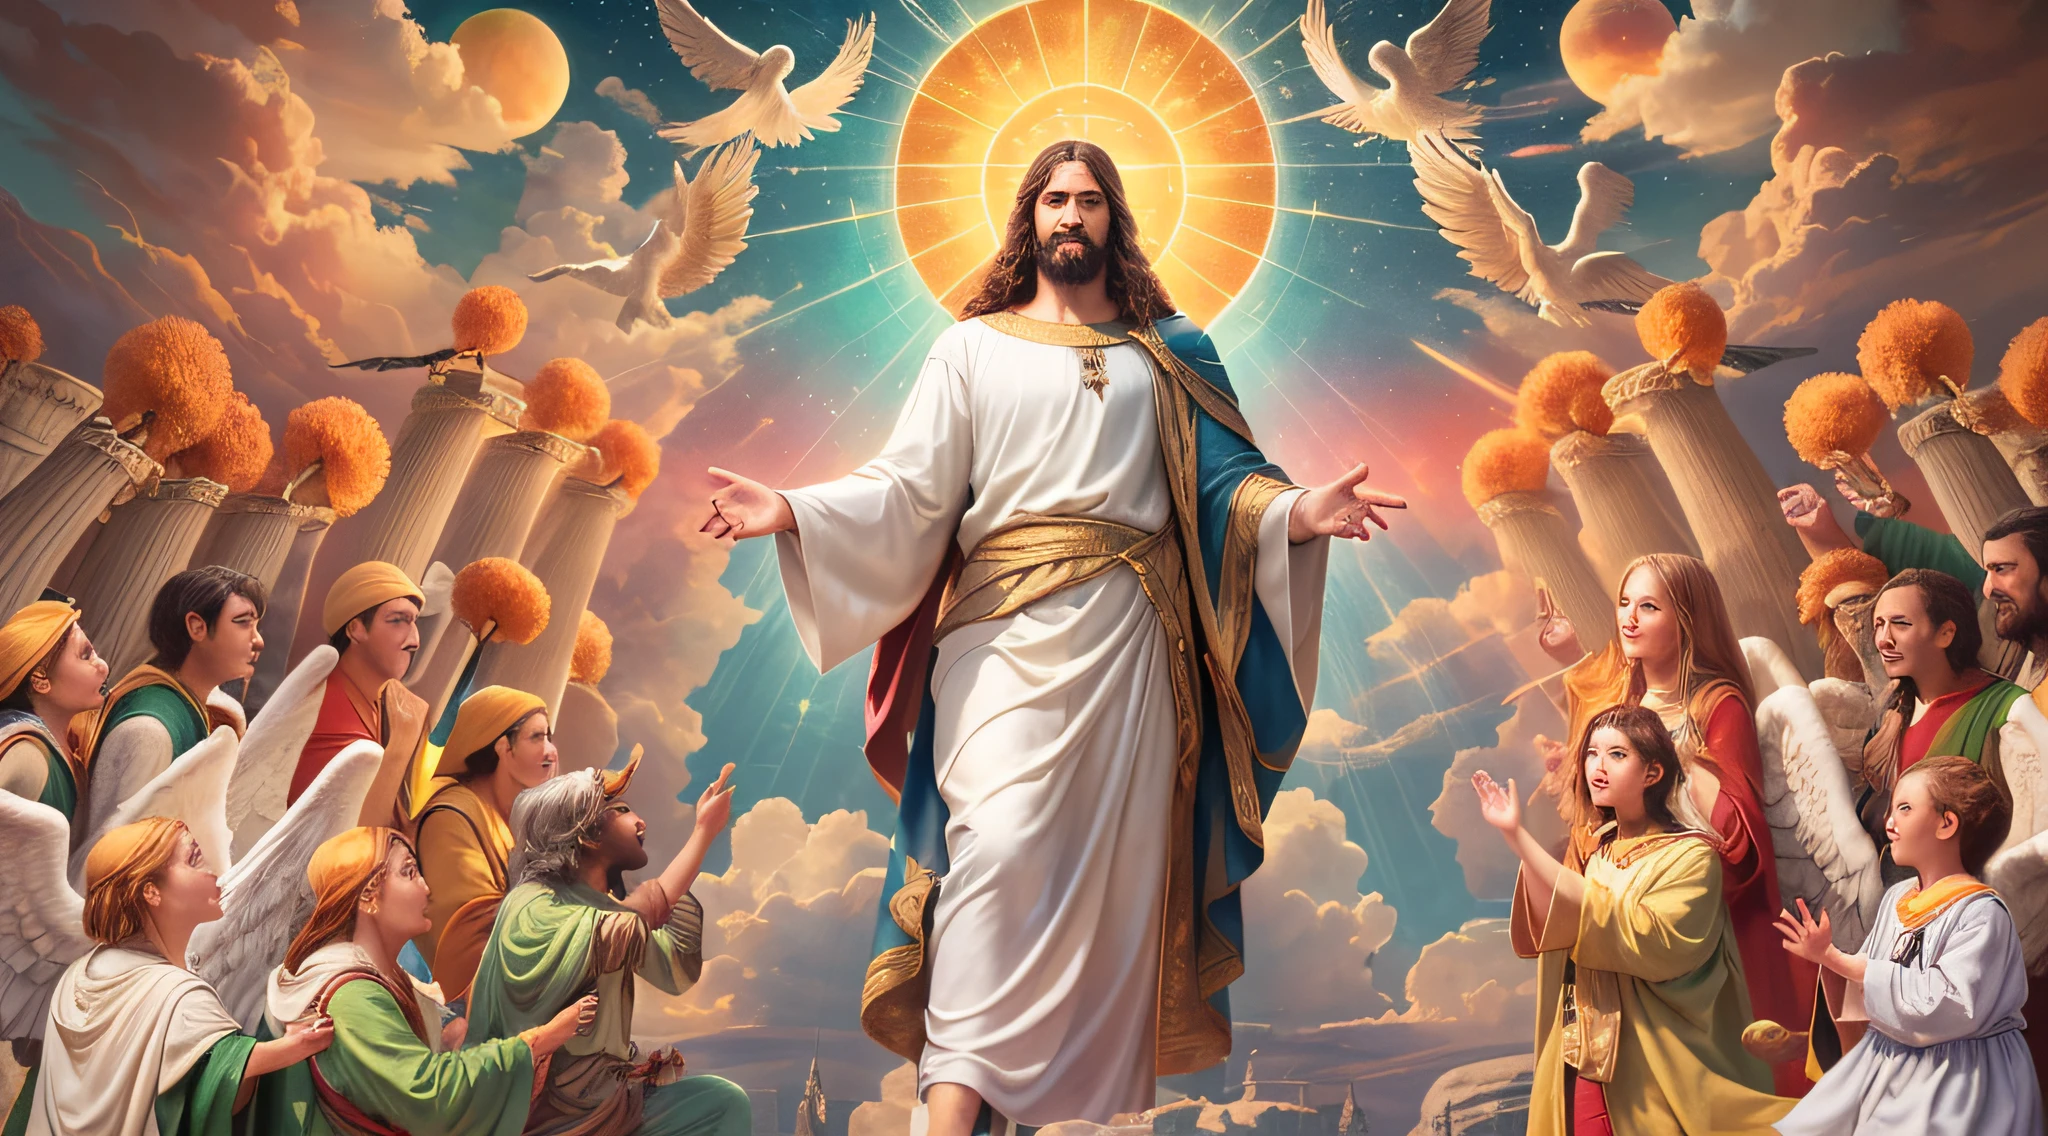 超リアルな8K映像: イエスと父なる神との第三天の素晴らしさ!
8Kウルトラリアリズムのこの壮大な画像で, あなたはそのすべての素晴らしさの中で第三の天を見るでしょう, 父なる神のそばにイエスと共に, 彼らの天の玉座に座って. シーンはまばゆいばかりの色と正確な詳細でいっぱいです, すべての神聖な側面を見事に捉える. イエスの表情は平安と喜びを伝えます, 父なる神が威厳と最高の力を放つ間. 周りの天使たちは畏敬の念を抱いています, そして、神の調和の感覚が環境全体に浸透しています. この超リアルな画像は、精神的な反省と神とのつながりを刺激することができます, 神の愛と憐れみの偉大さを明らかにする.